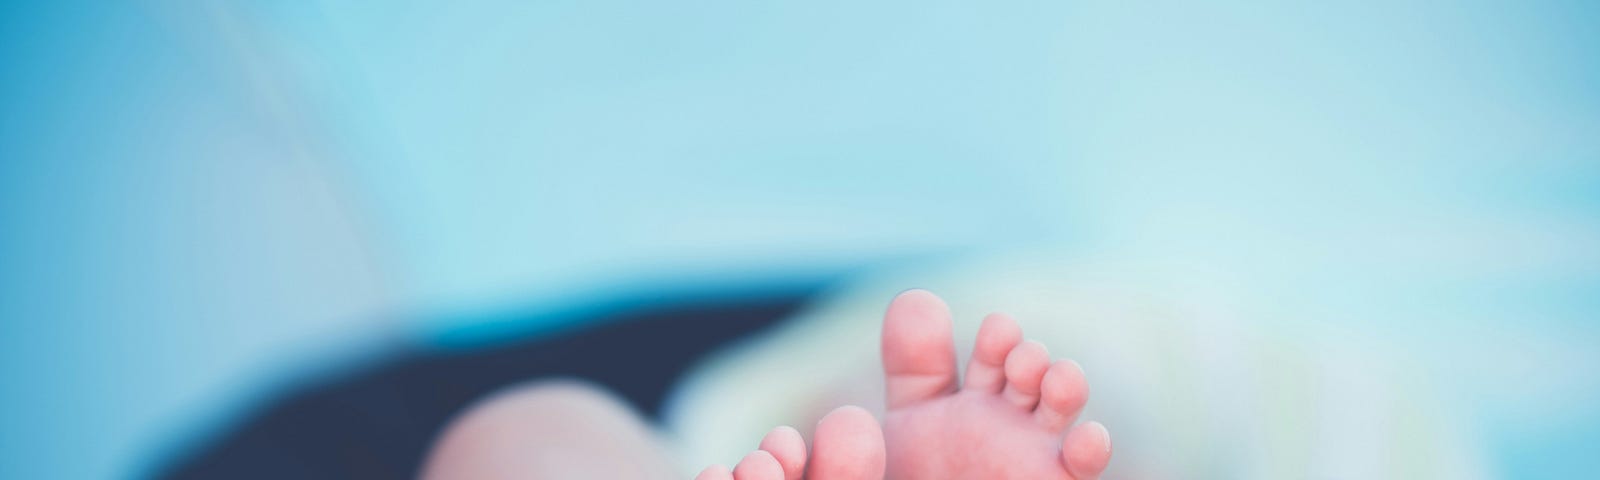 Photo by 🇸🇮 Janko Ferlič on Unsplash. Babies feet